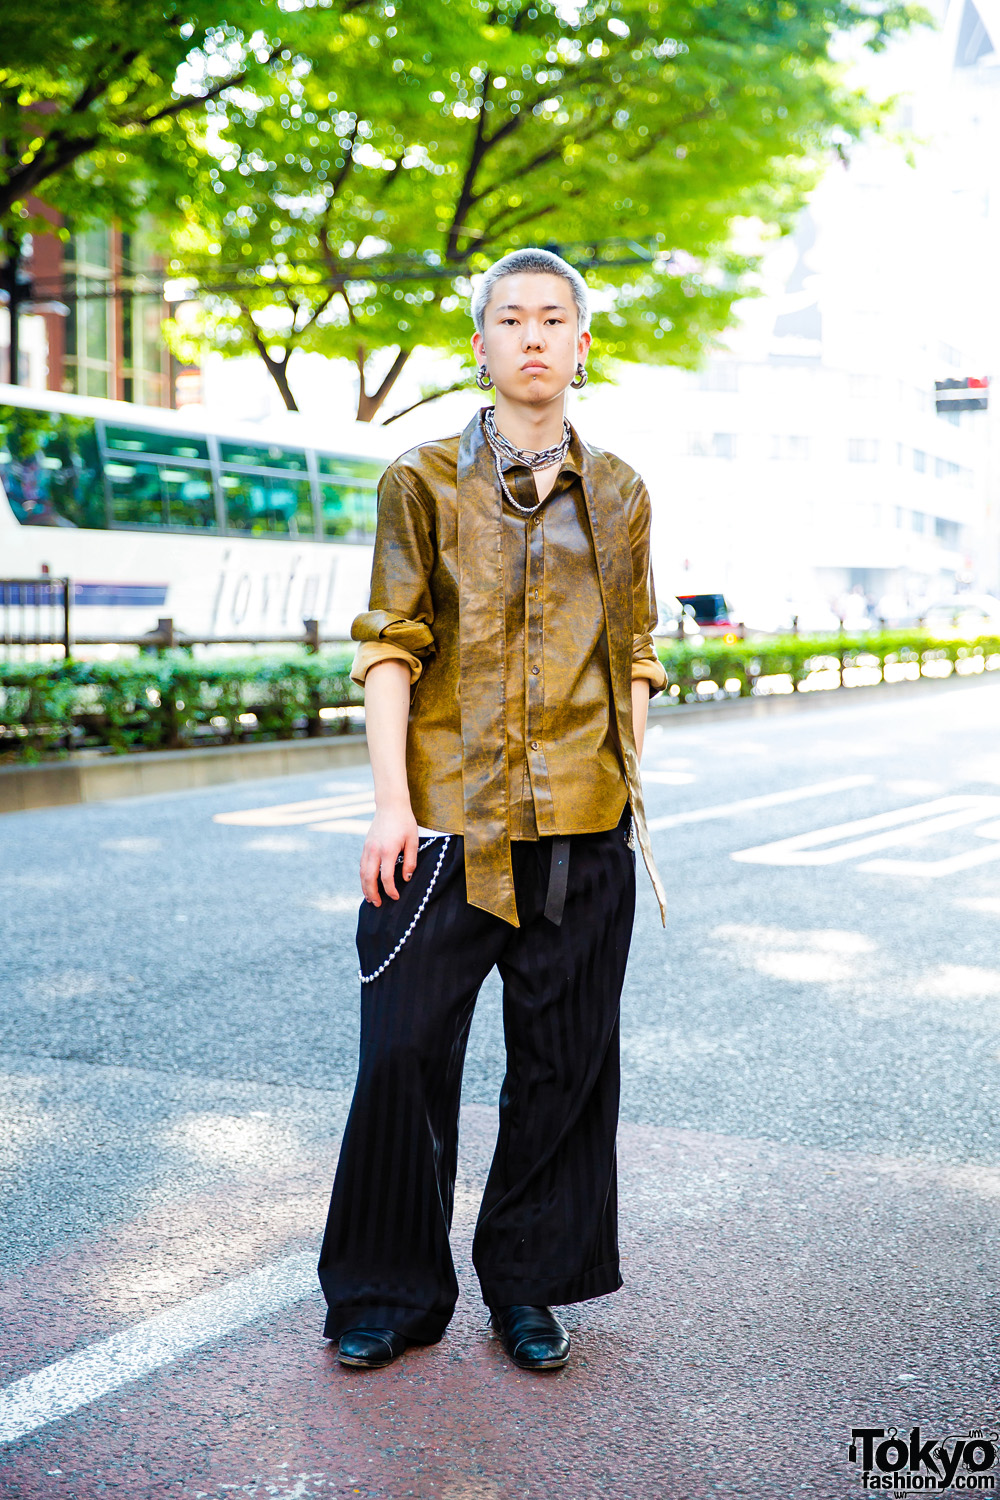 Japanese Hair Stylist in Edgy Tokyo Street Fashion w/ Barragan, M.Y.O.B ...